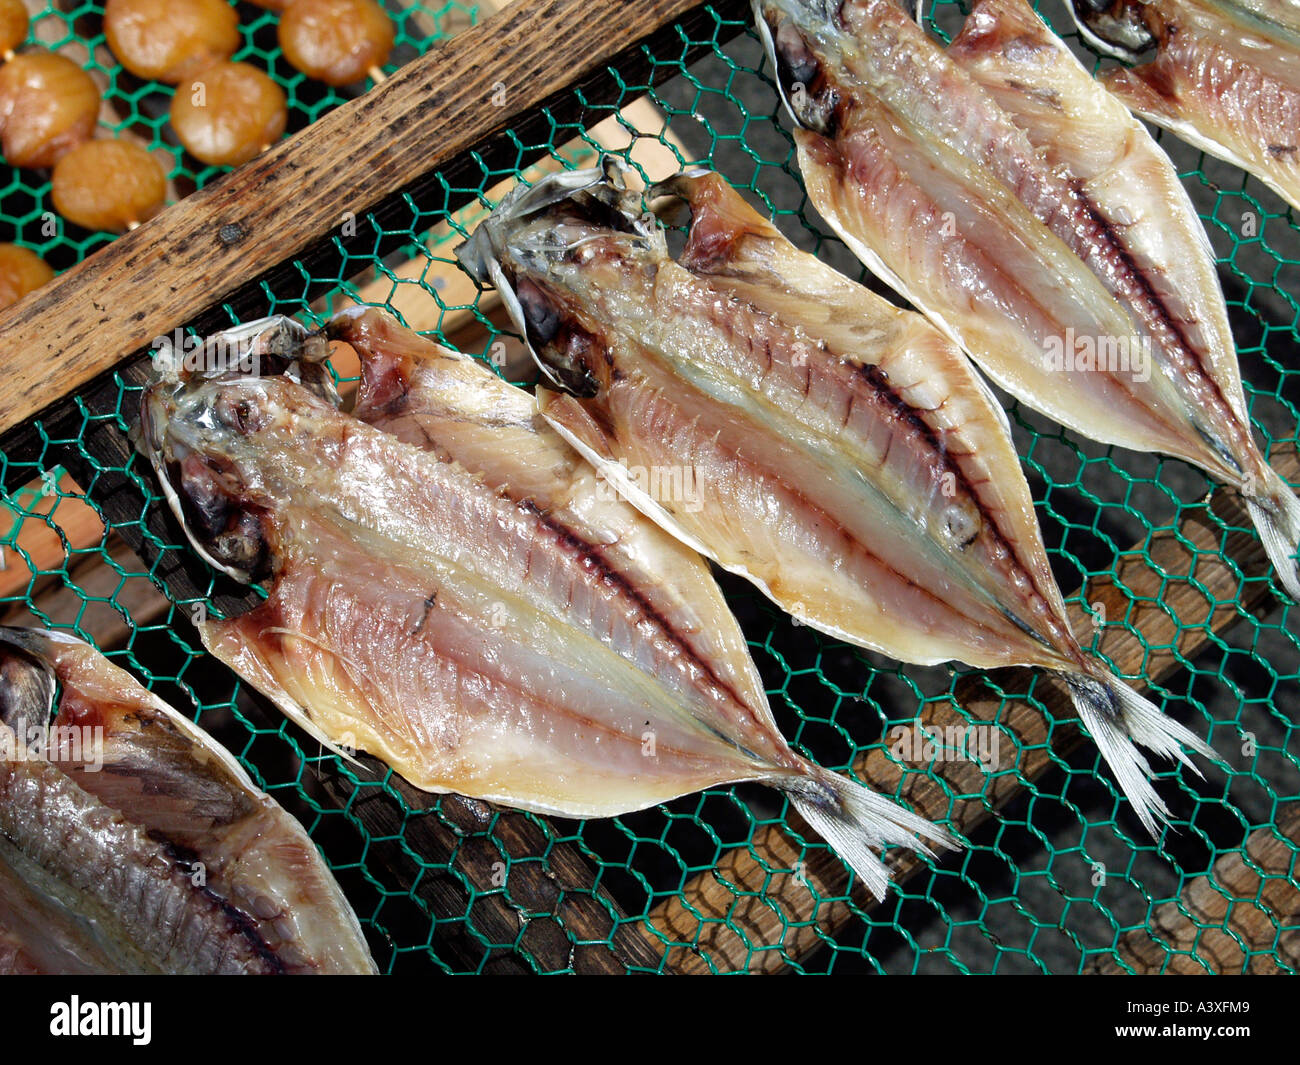 Mercato del pesce in Giappone Foto Stock